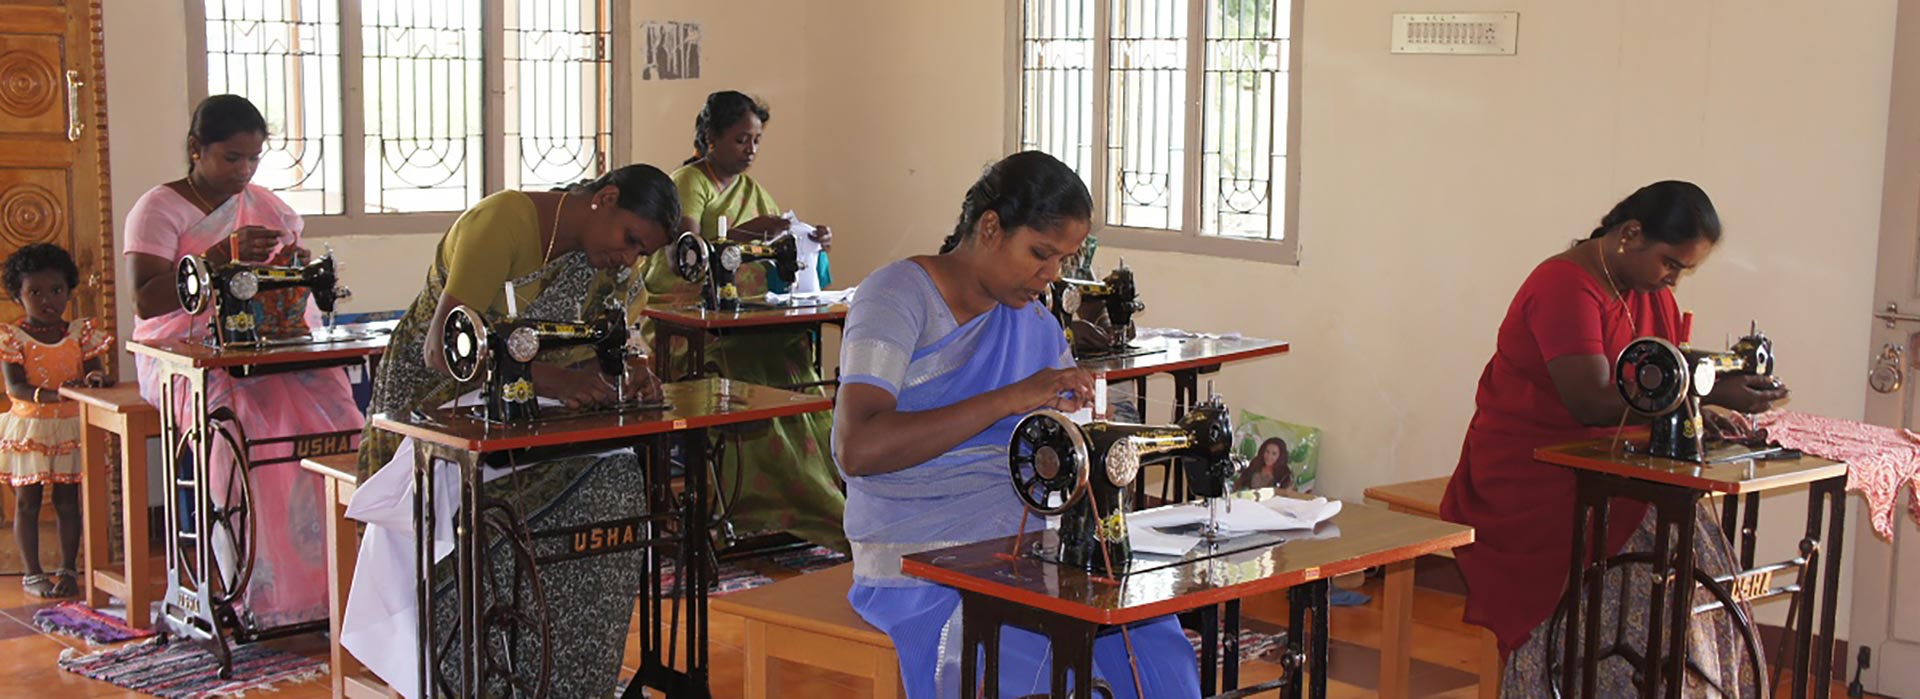 Examen på syskolan i Kalamavur, Indien